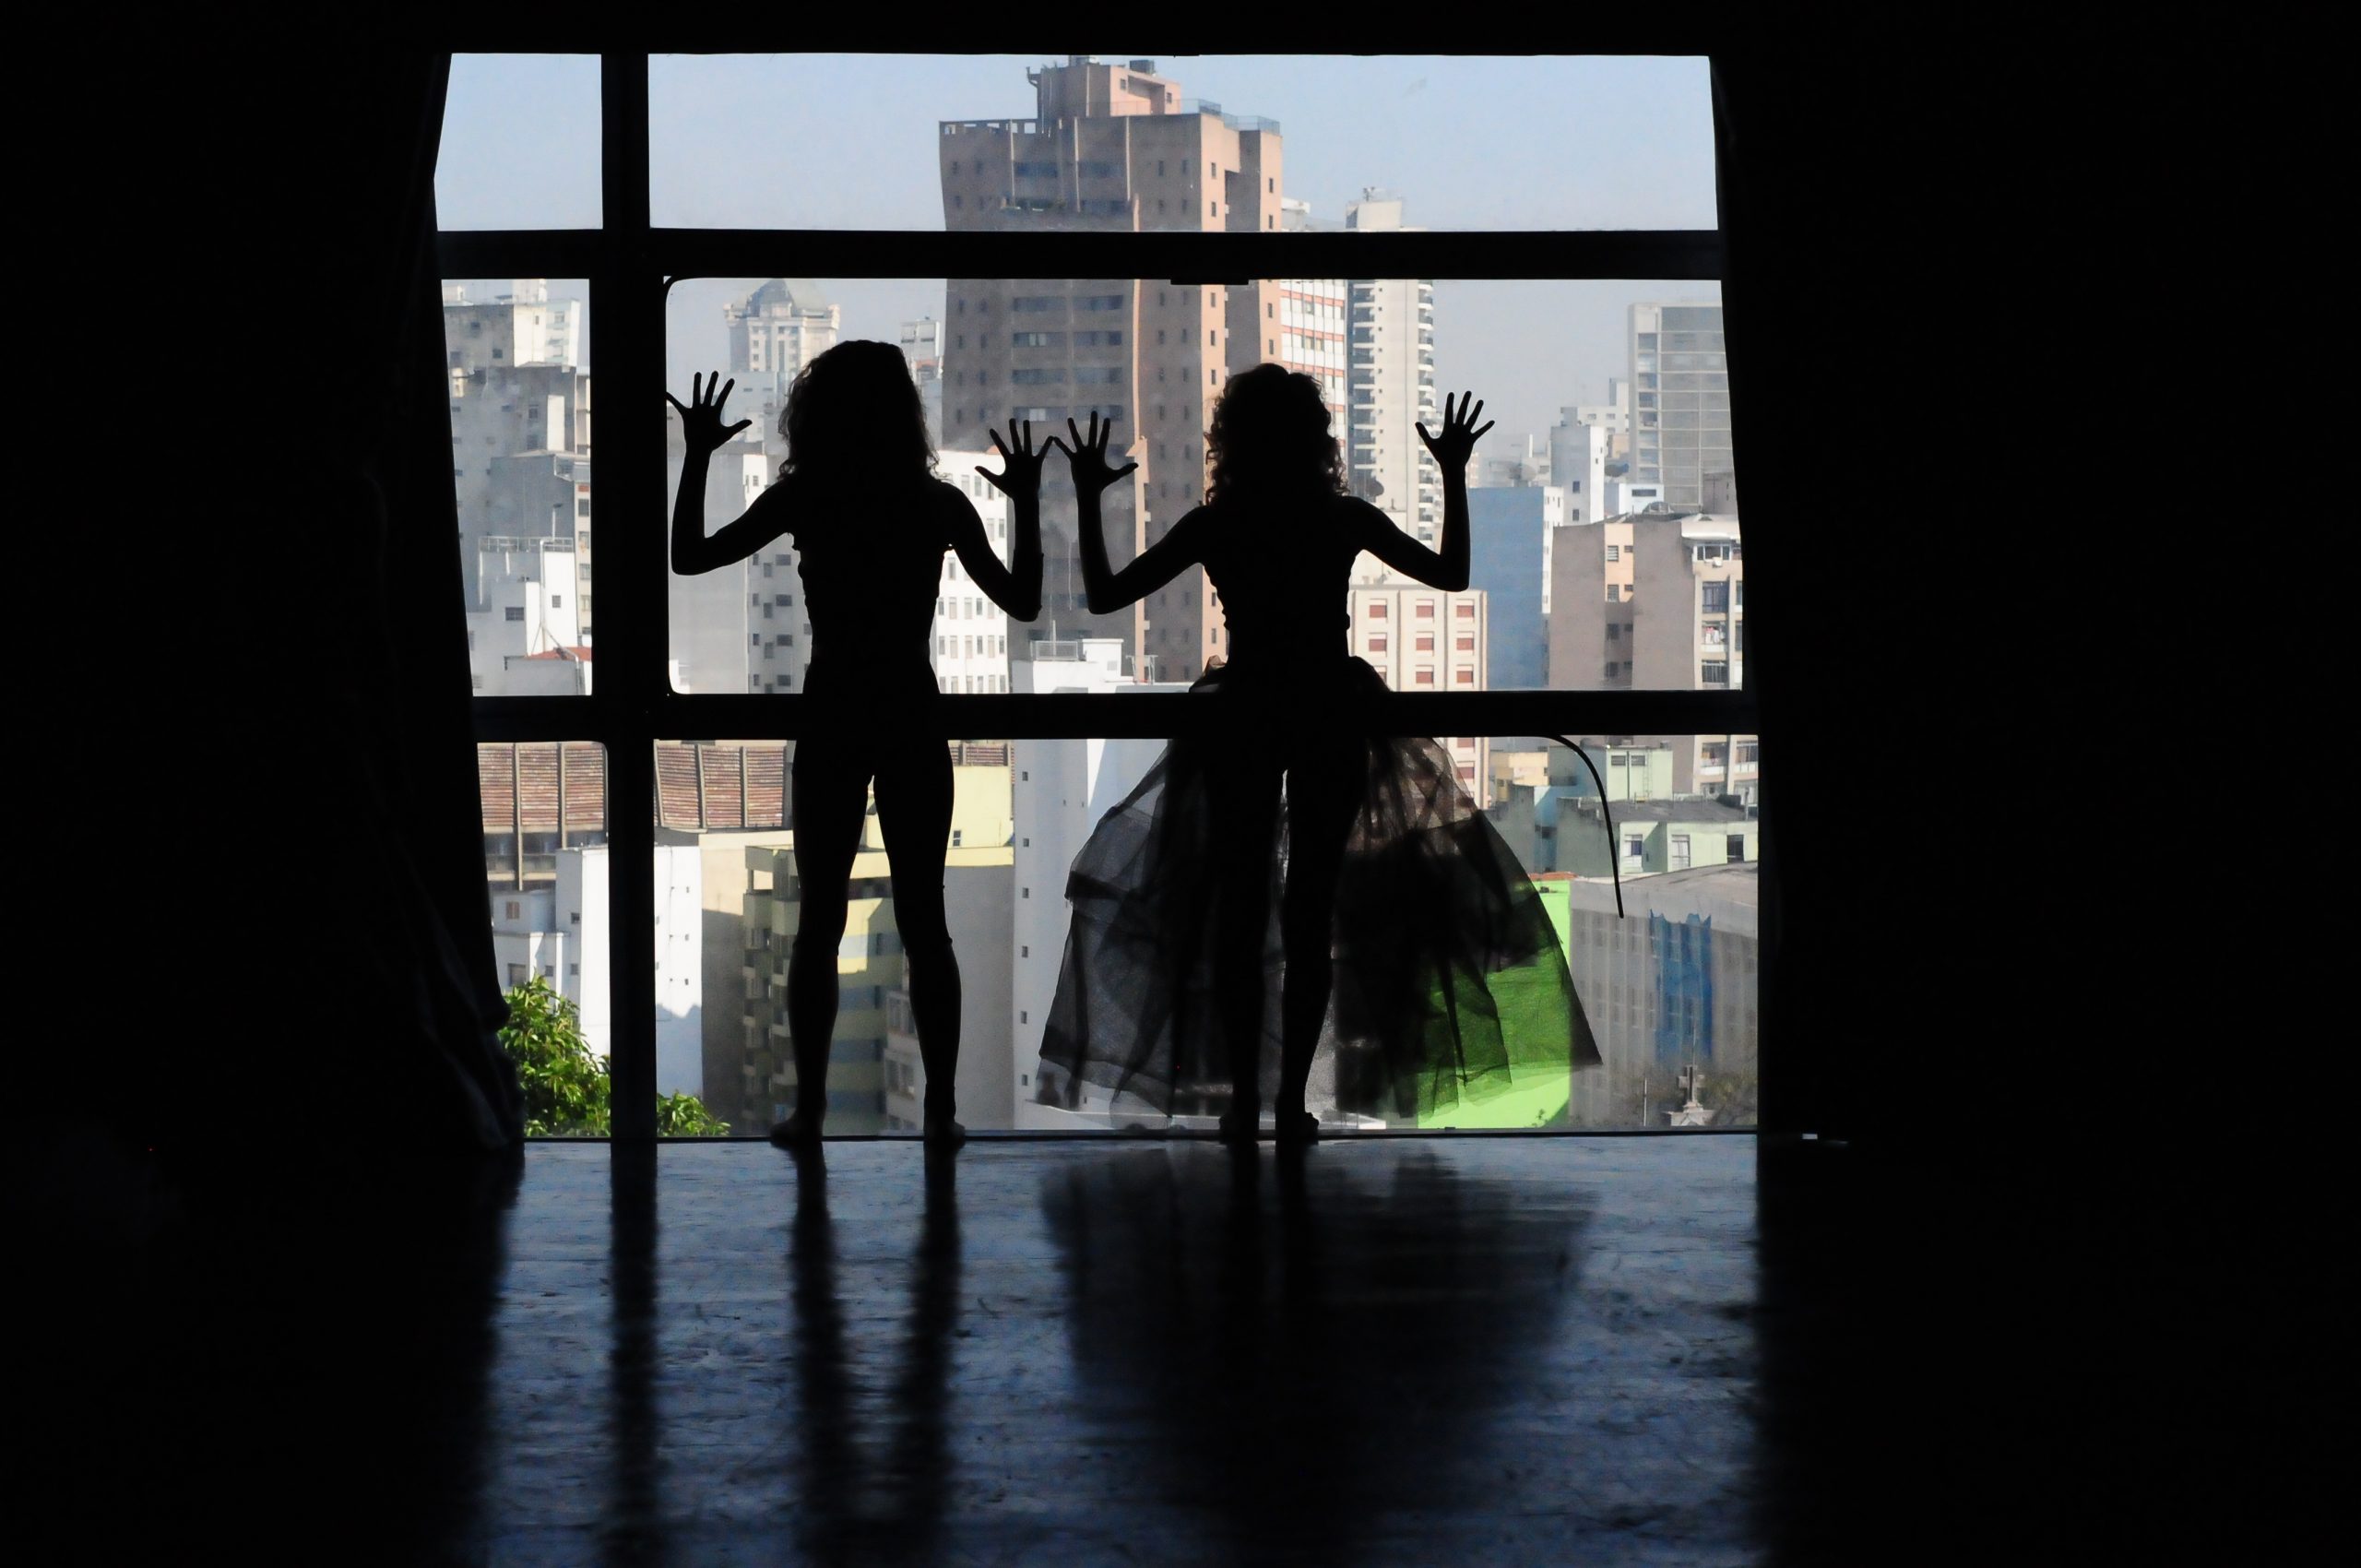 Dois estudantes da SP Escola de Teatro na janela de um prédio em experimento cênico